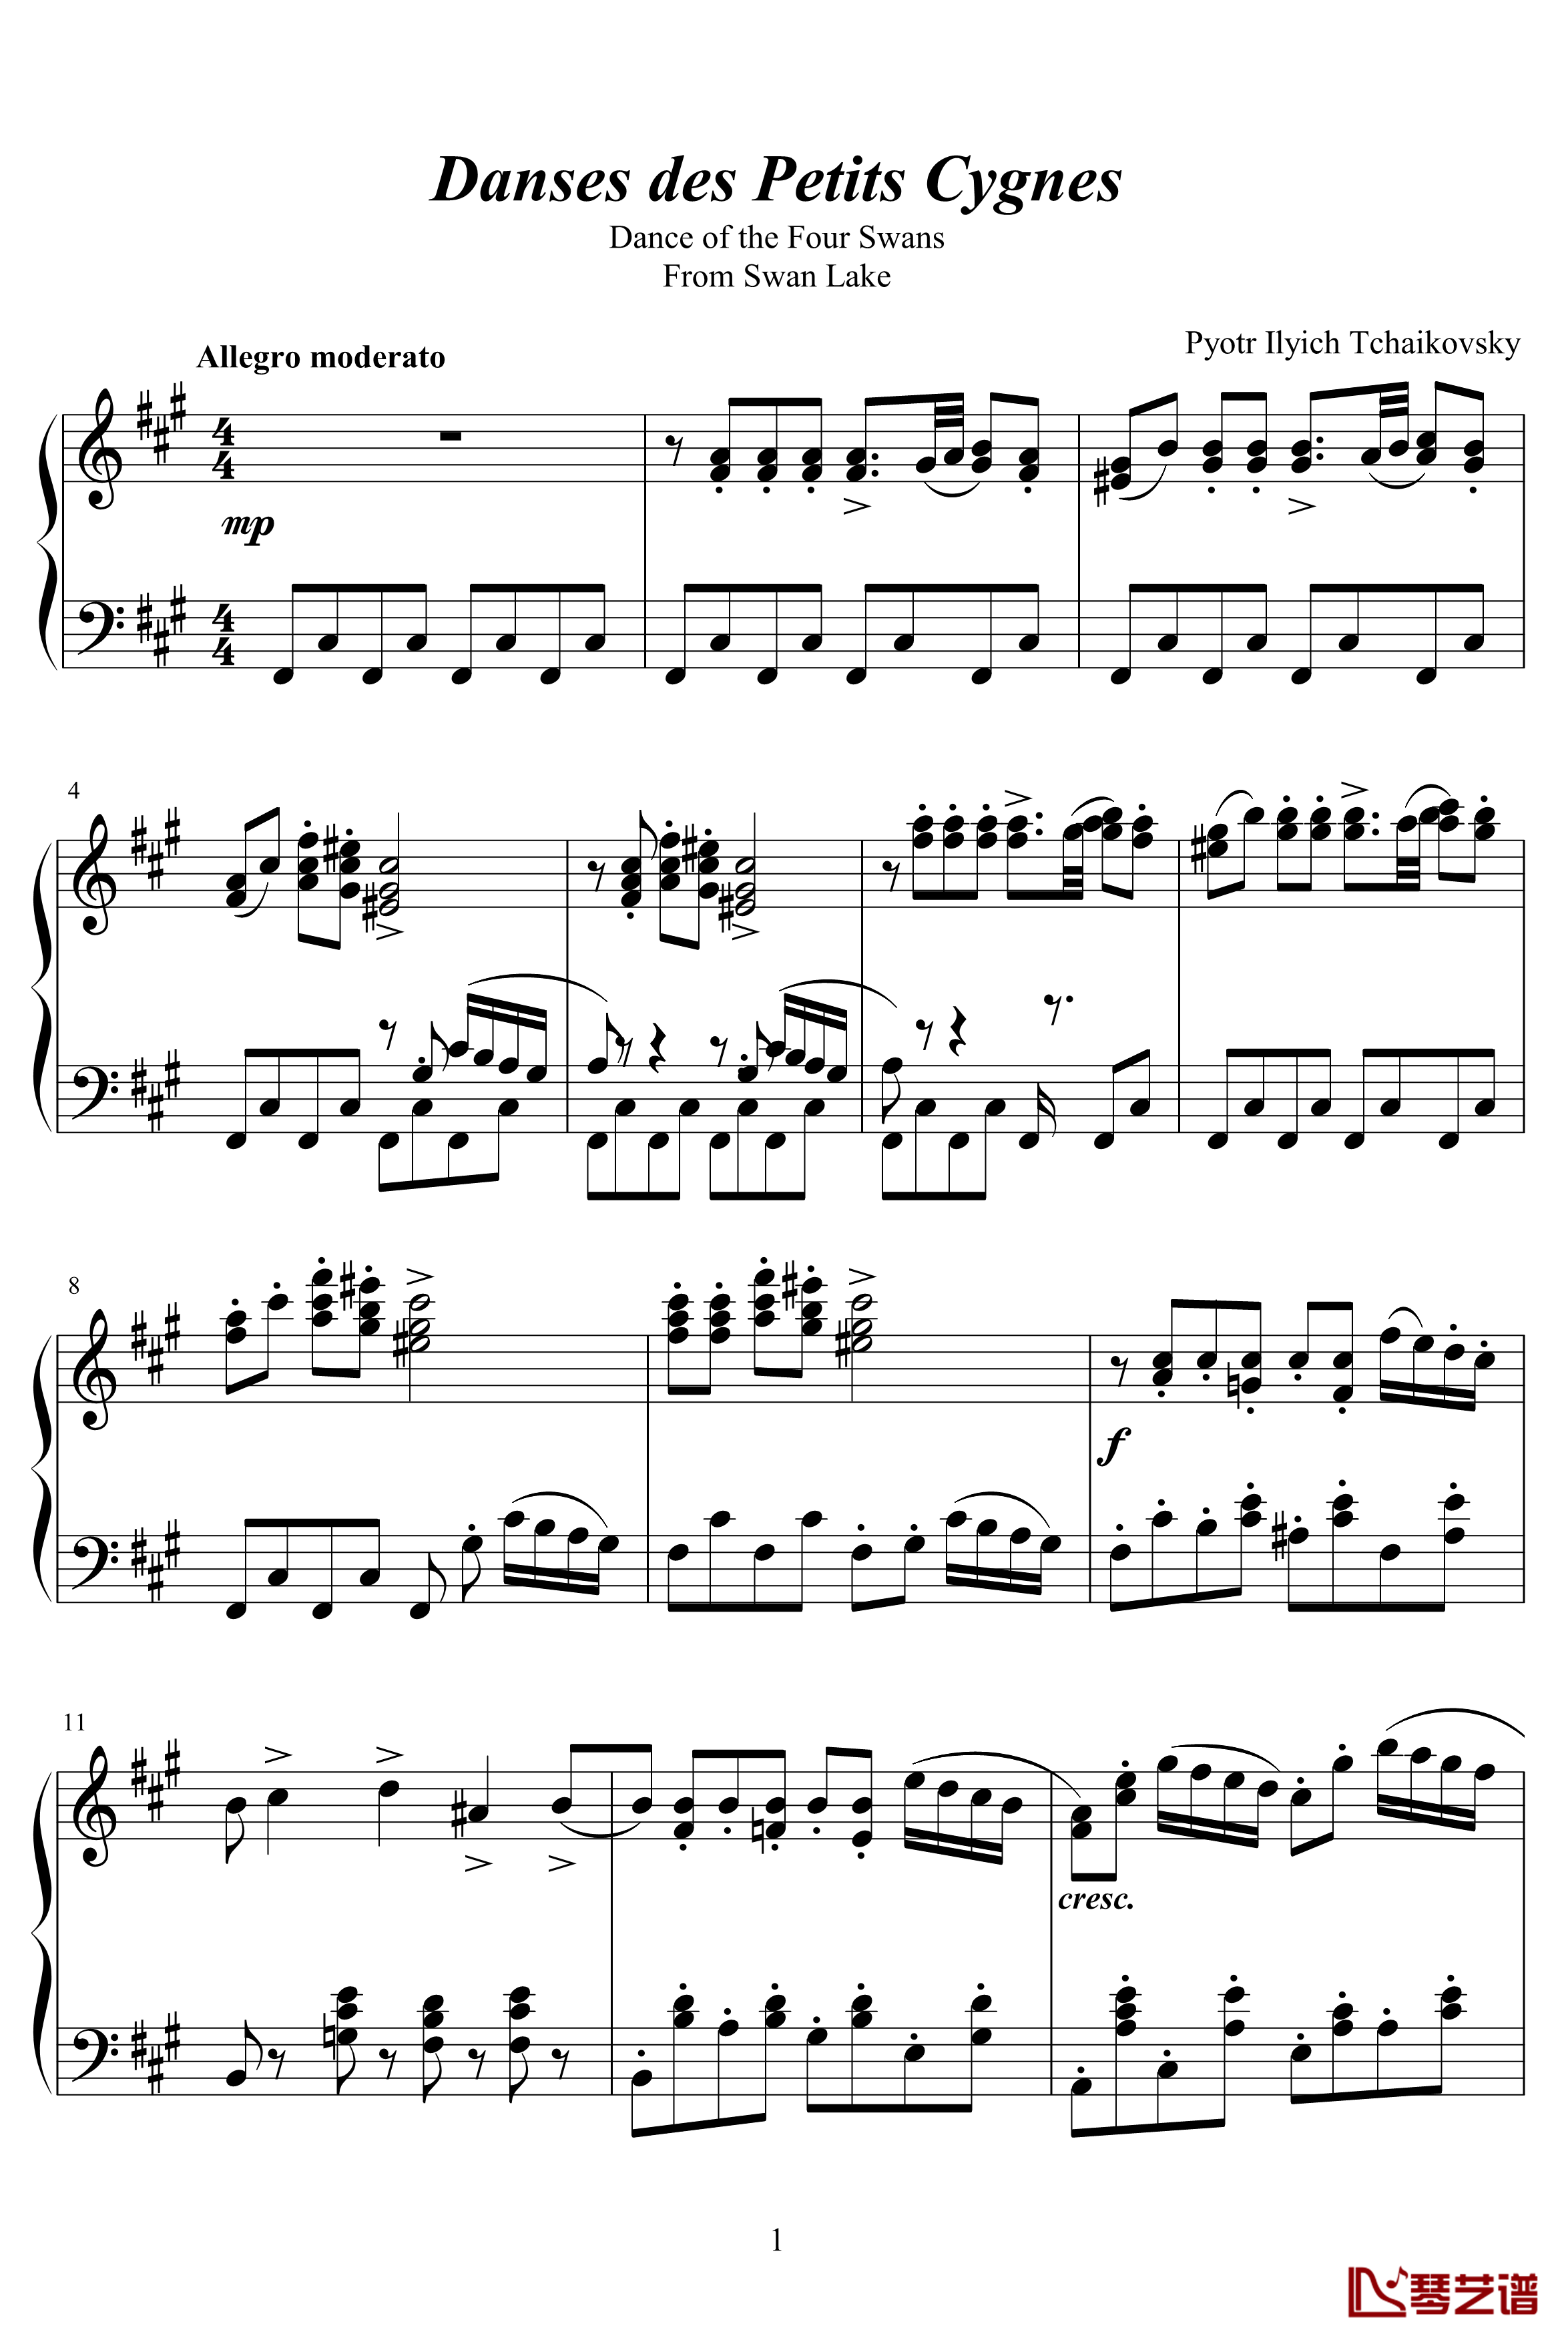 四小天鹅舞曲Charm2版钢琴谱-柴科夫斯基-Peter Ilyich Tchaikovsky1